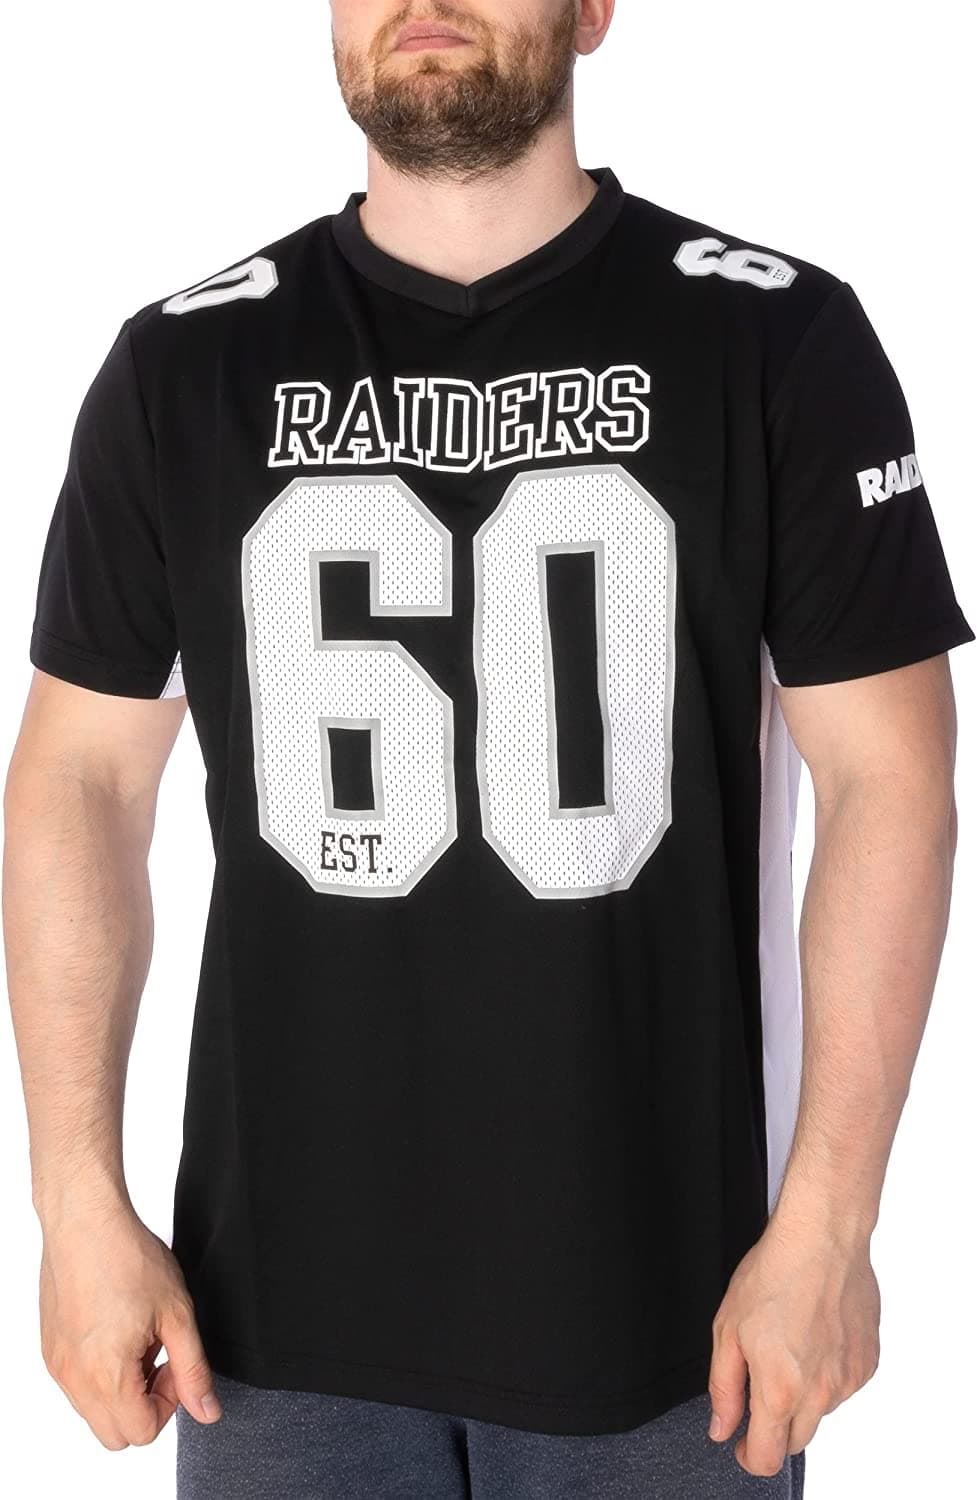 Camiseta Fanatics Raiders 007U-1084-8D-02S black white - Imagen 1